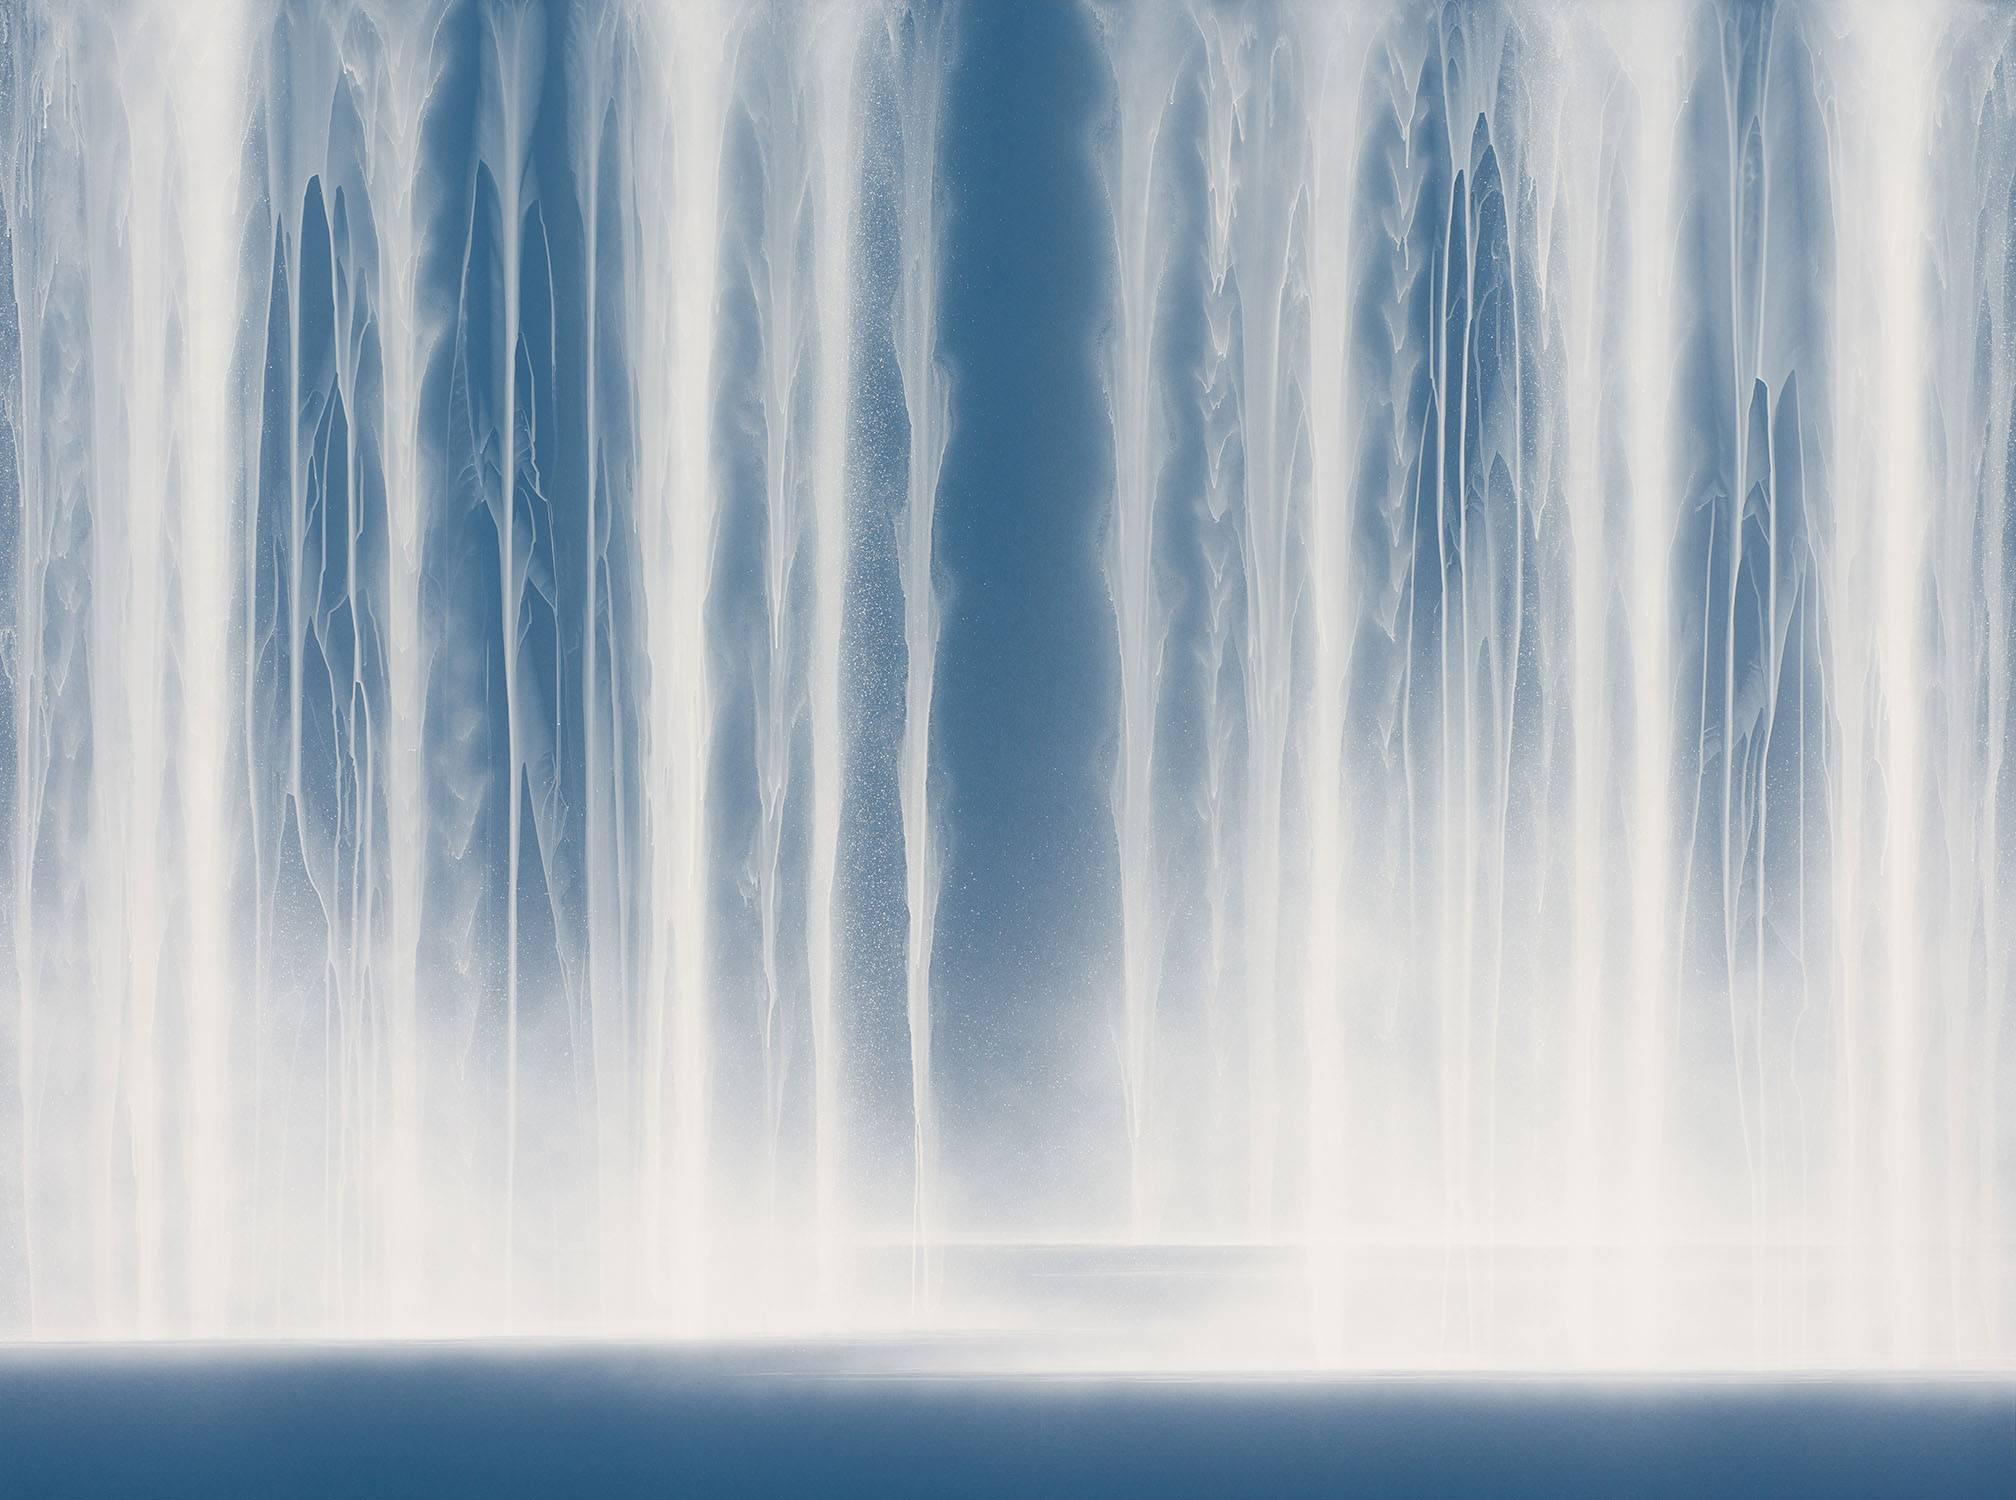 Hiroshi Senju Abstract Painting - Waterfall